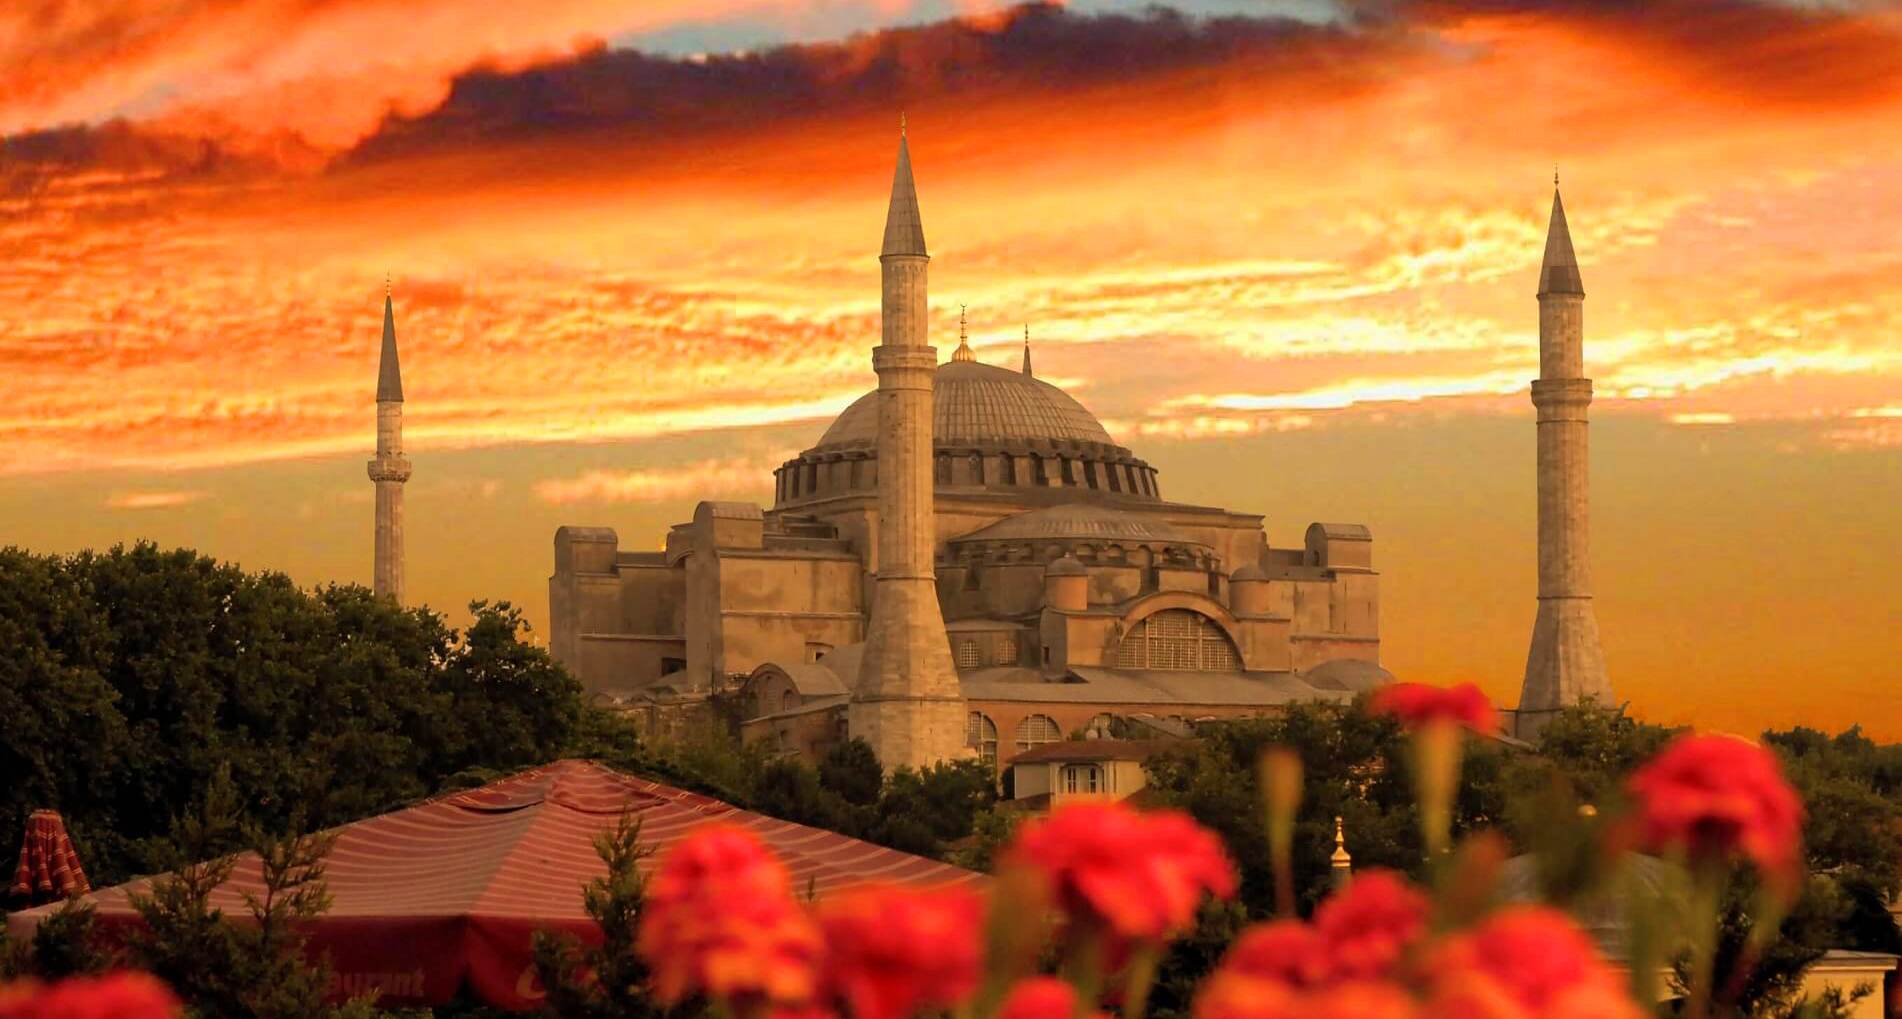 Τι σημαίνουν οι τέσσερις Αγγελοι που αποκαλύφθηκαν στο ναό της Αγίας Σοφίας στην Κωνσταντινούπολη;